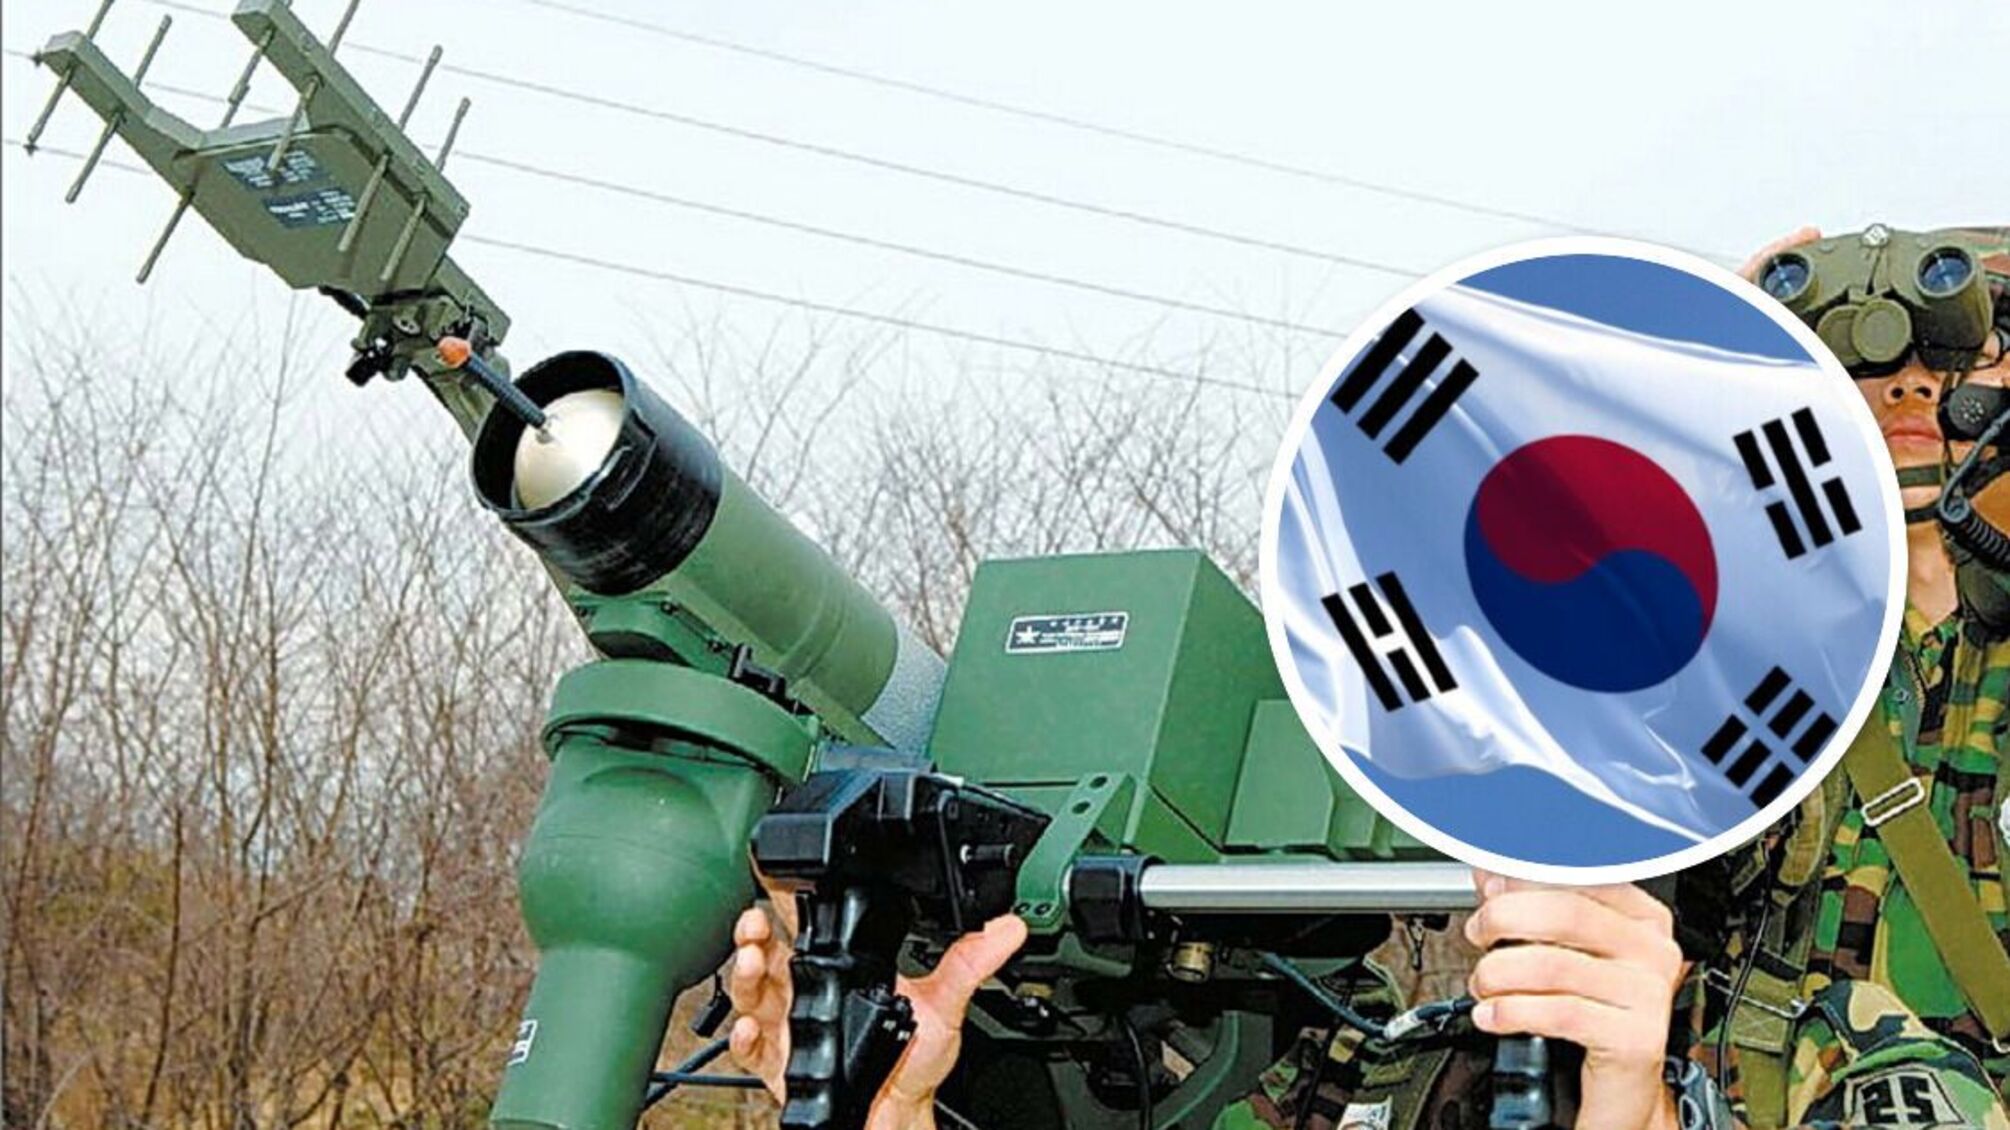 Південна Корея передасть Україні сучасні ПЗРК Shingung для збивання літаків - подробиці